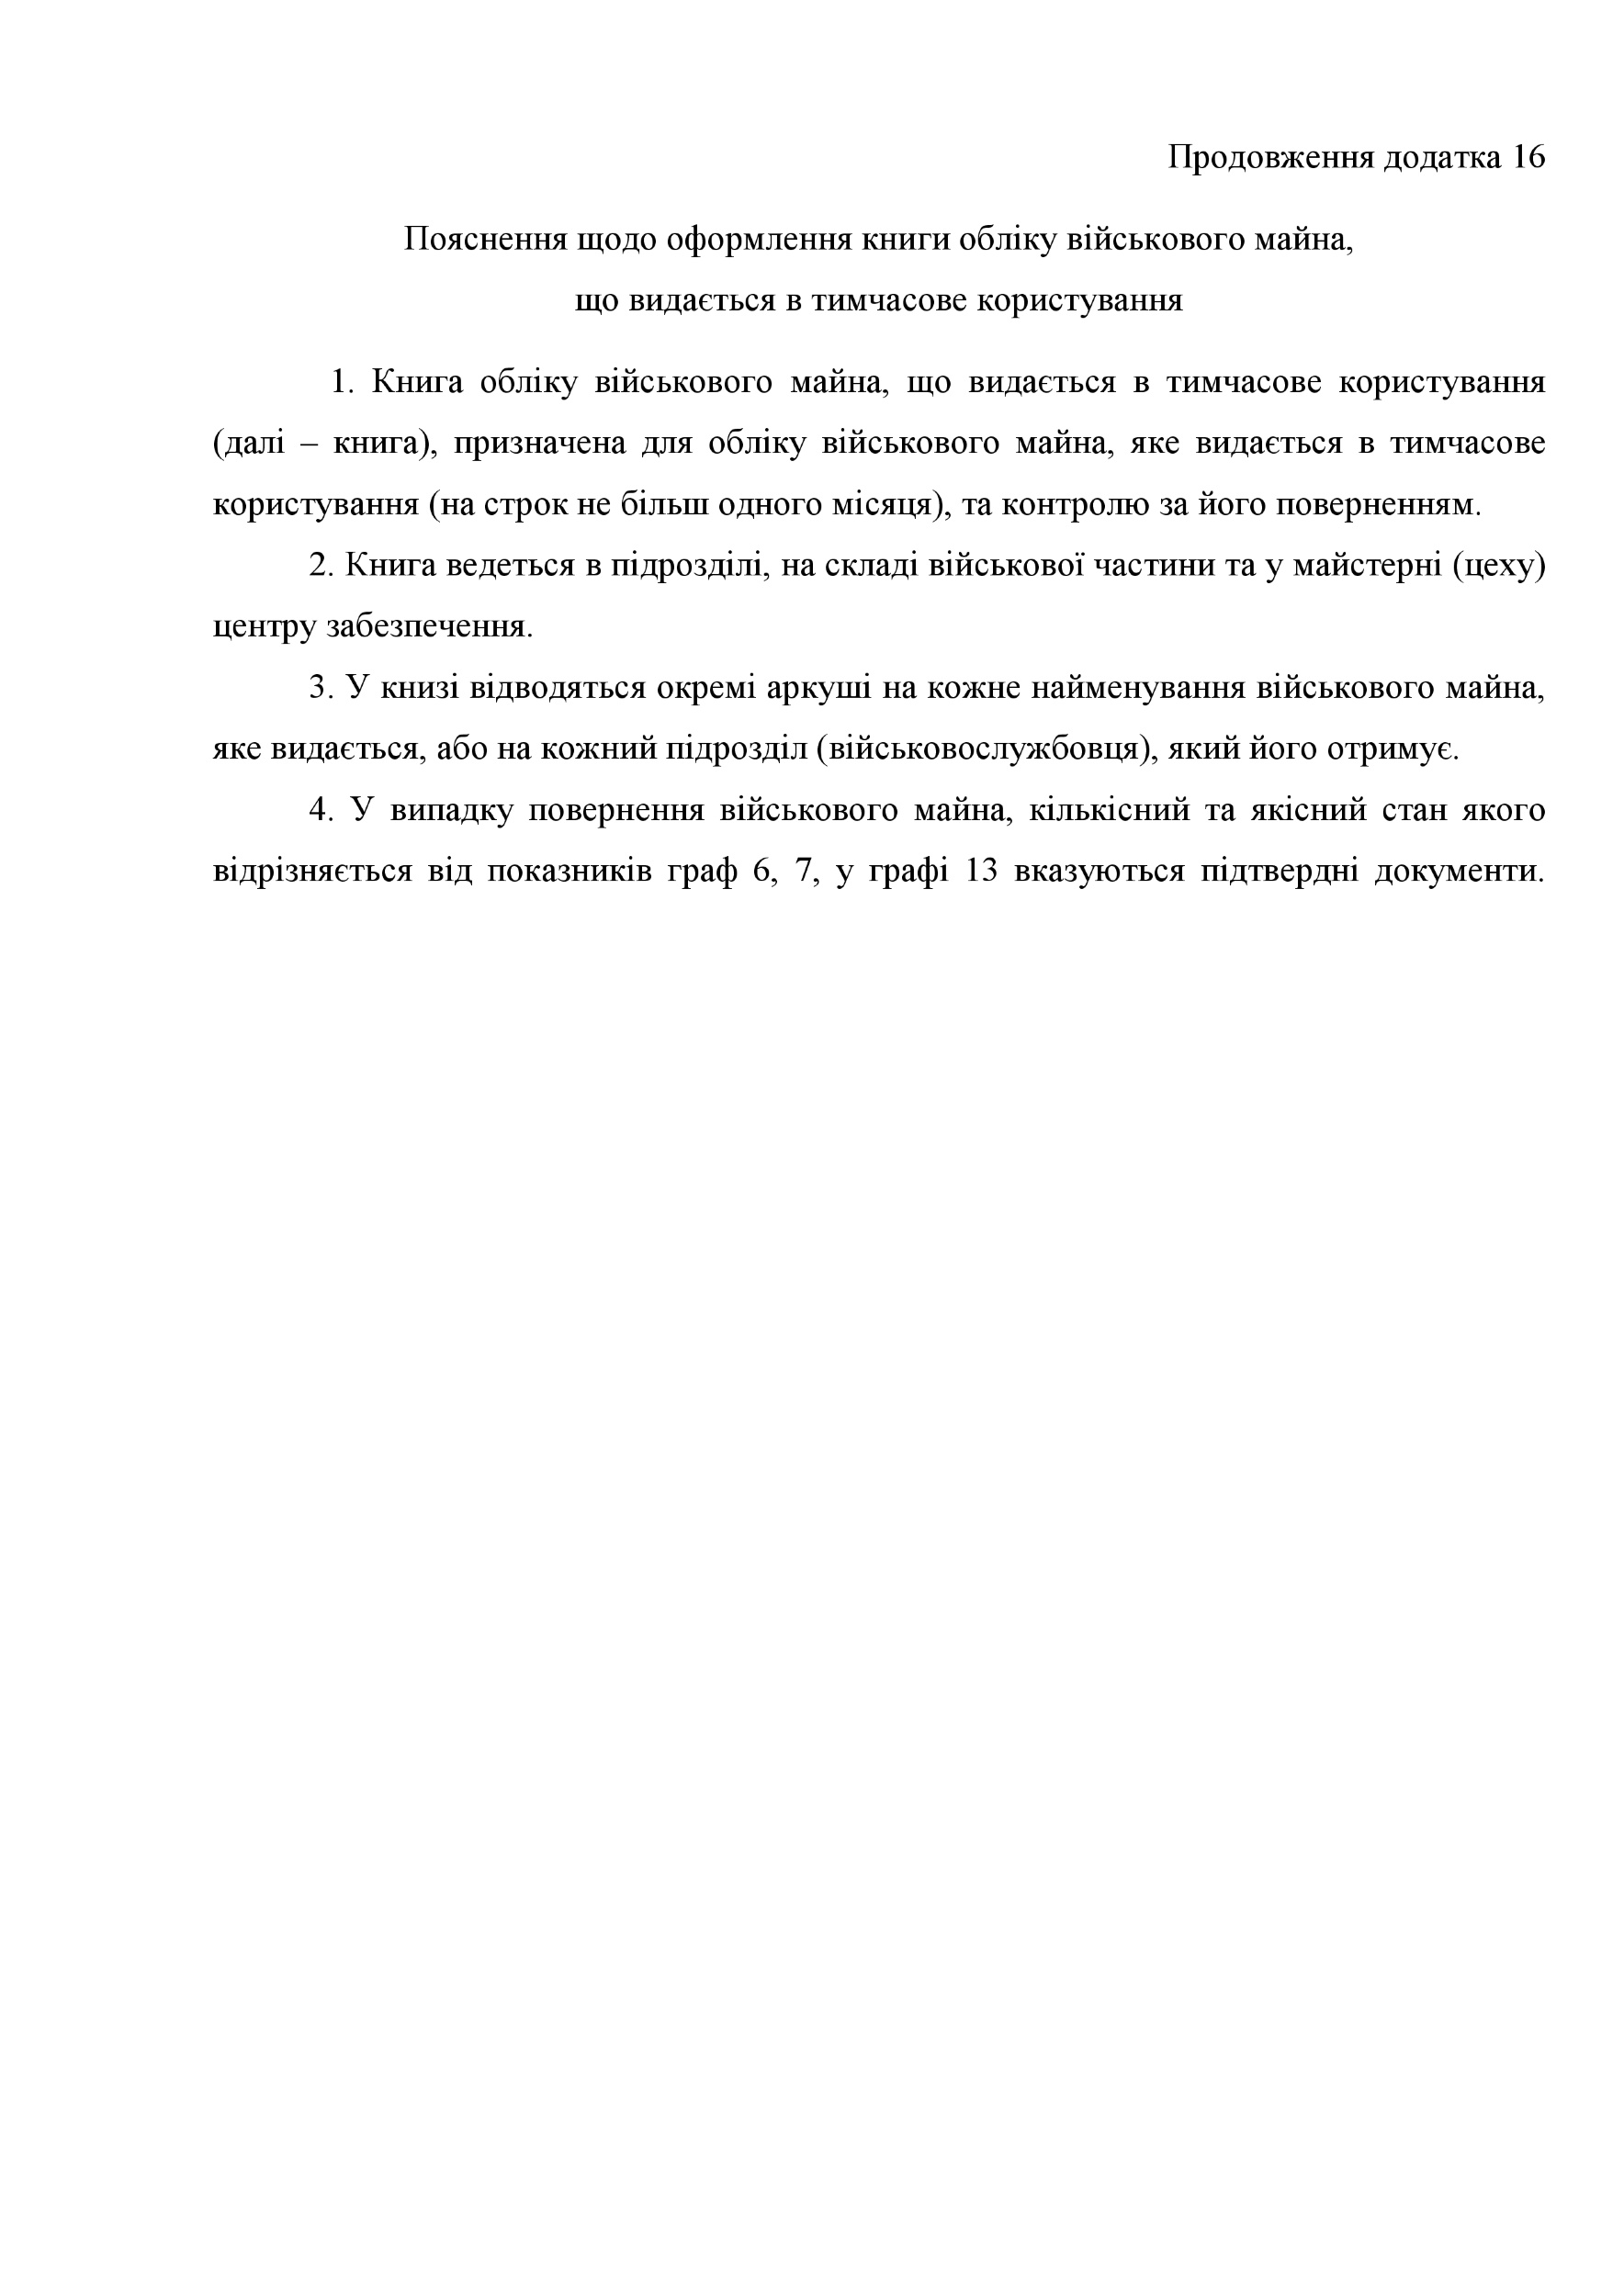 Книга обліку військового майна що видається в тимчасове користування, додаток 16. Автор — Міністерство оборони України. 